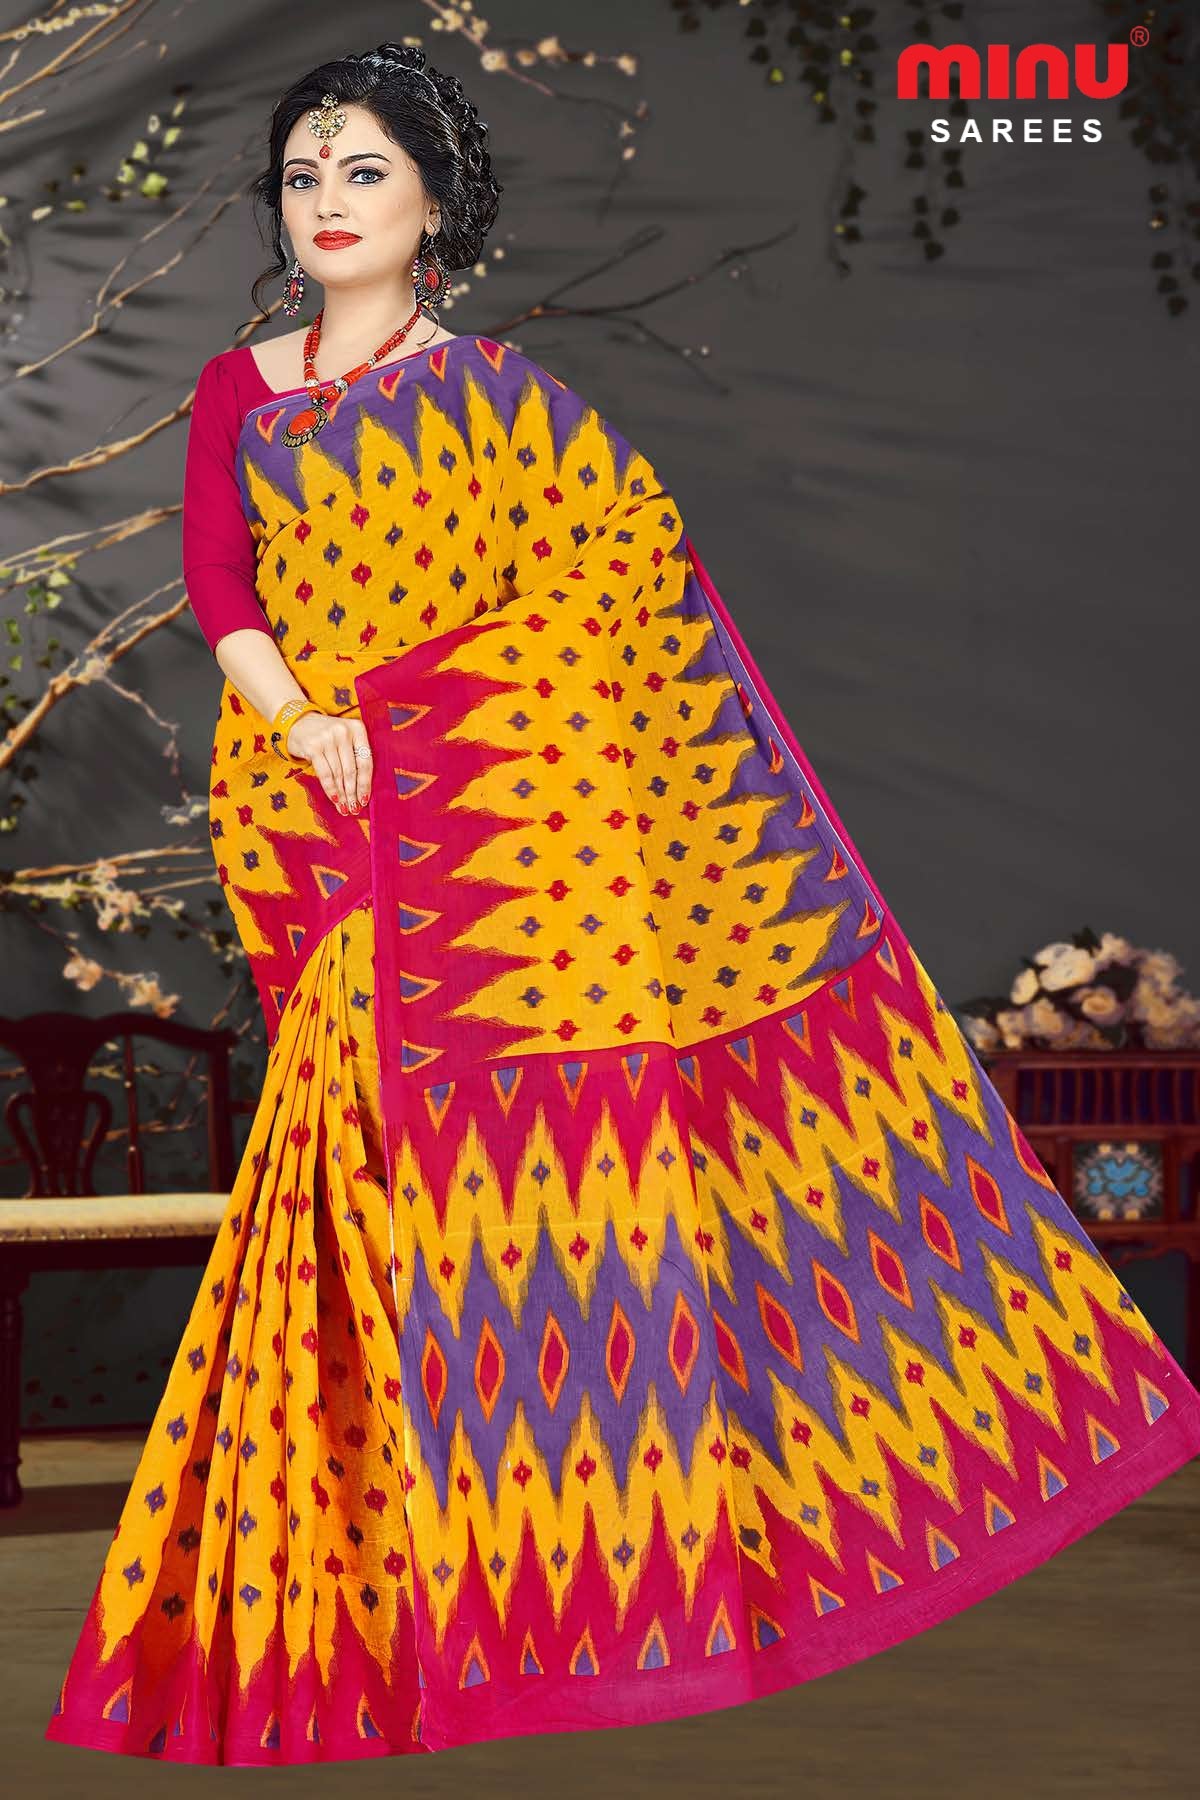 Women looking dashing wearing yellow printed saree